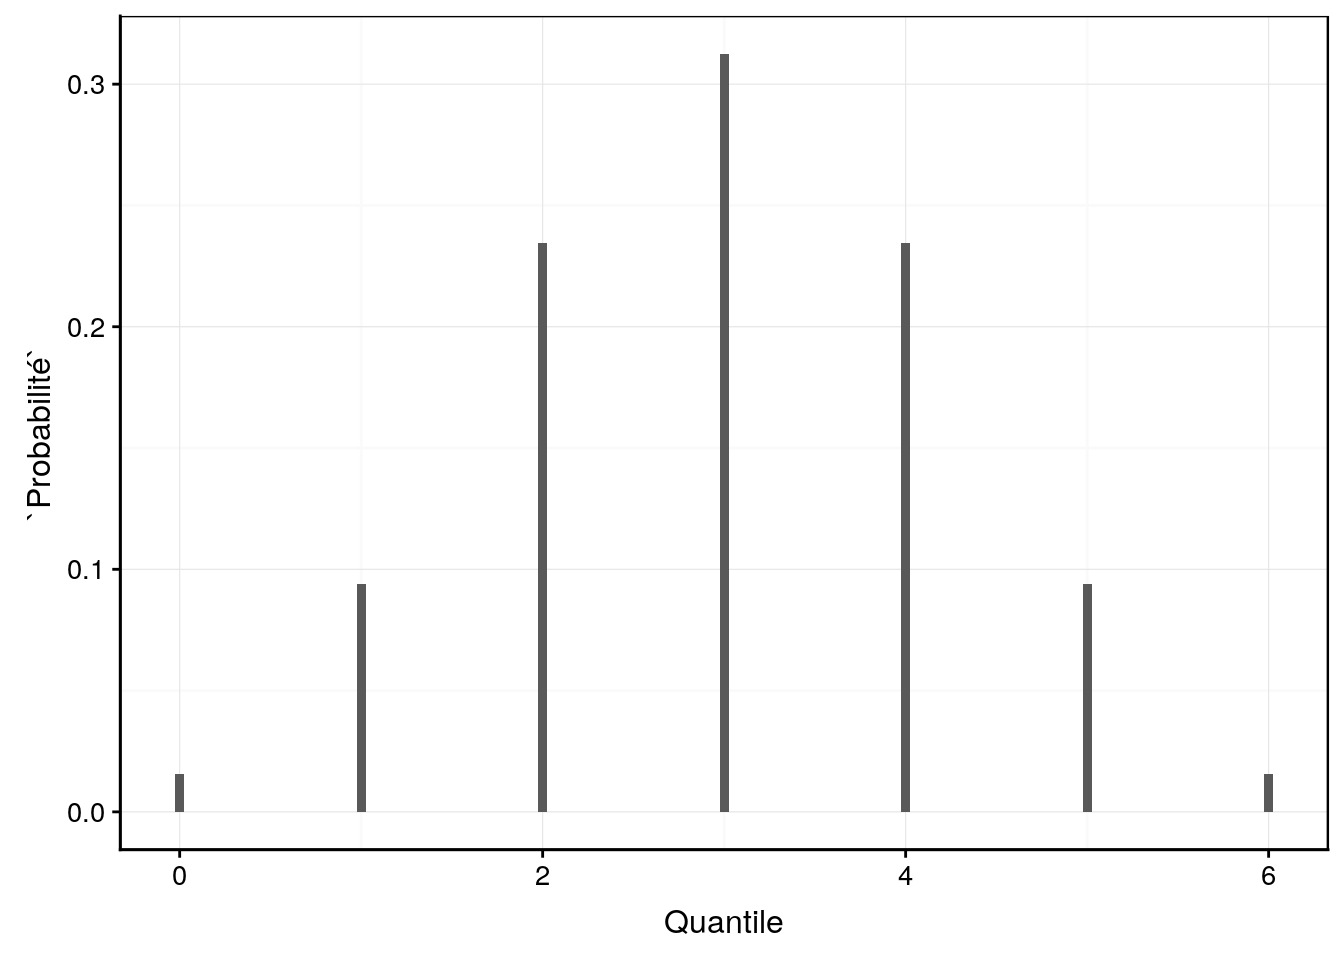 Probabilité d'avoir des garçons parmi une fratrie de 6 enfants (si le sexe ratio de 1:1).